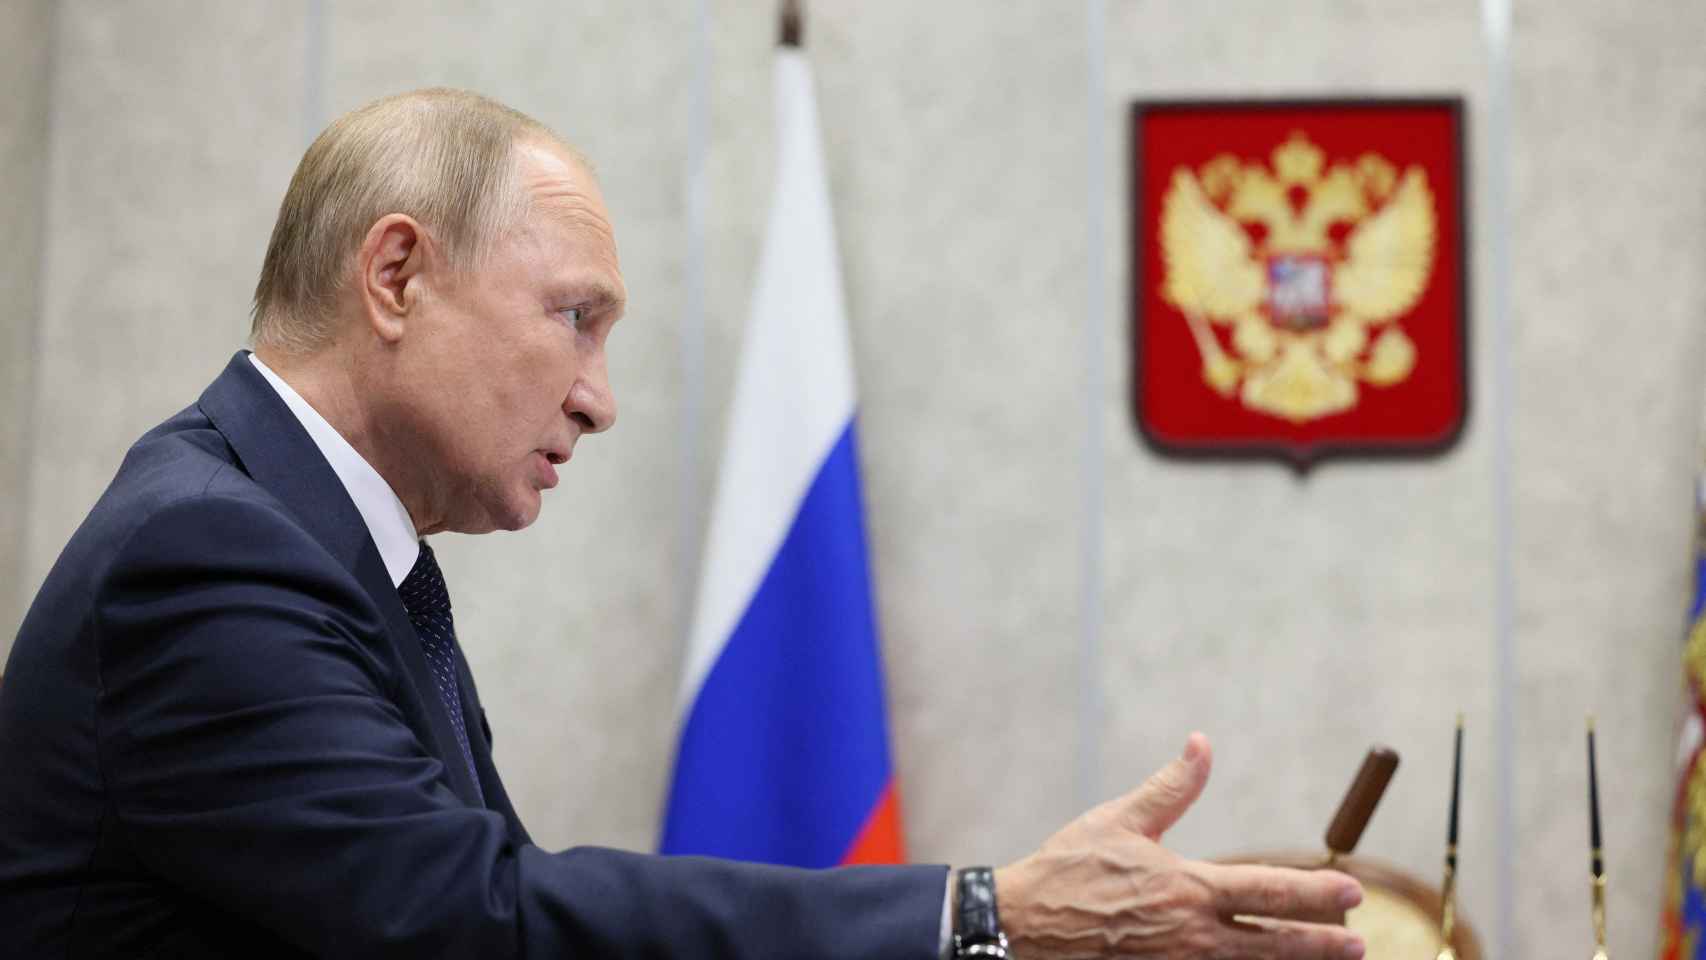 El presidente ruso, Vladimir Putin , asiste a una reunión con el gobernador de la región de Novgorod, Andrei Nikitin, en la ciudad de Veliky Novgorod, Rusia, el 21 de septiembre de 2022.